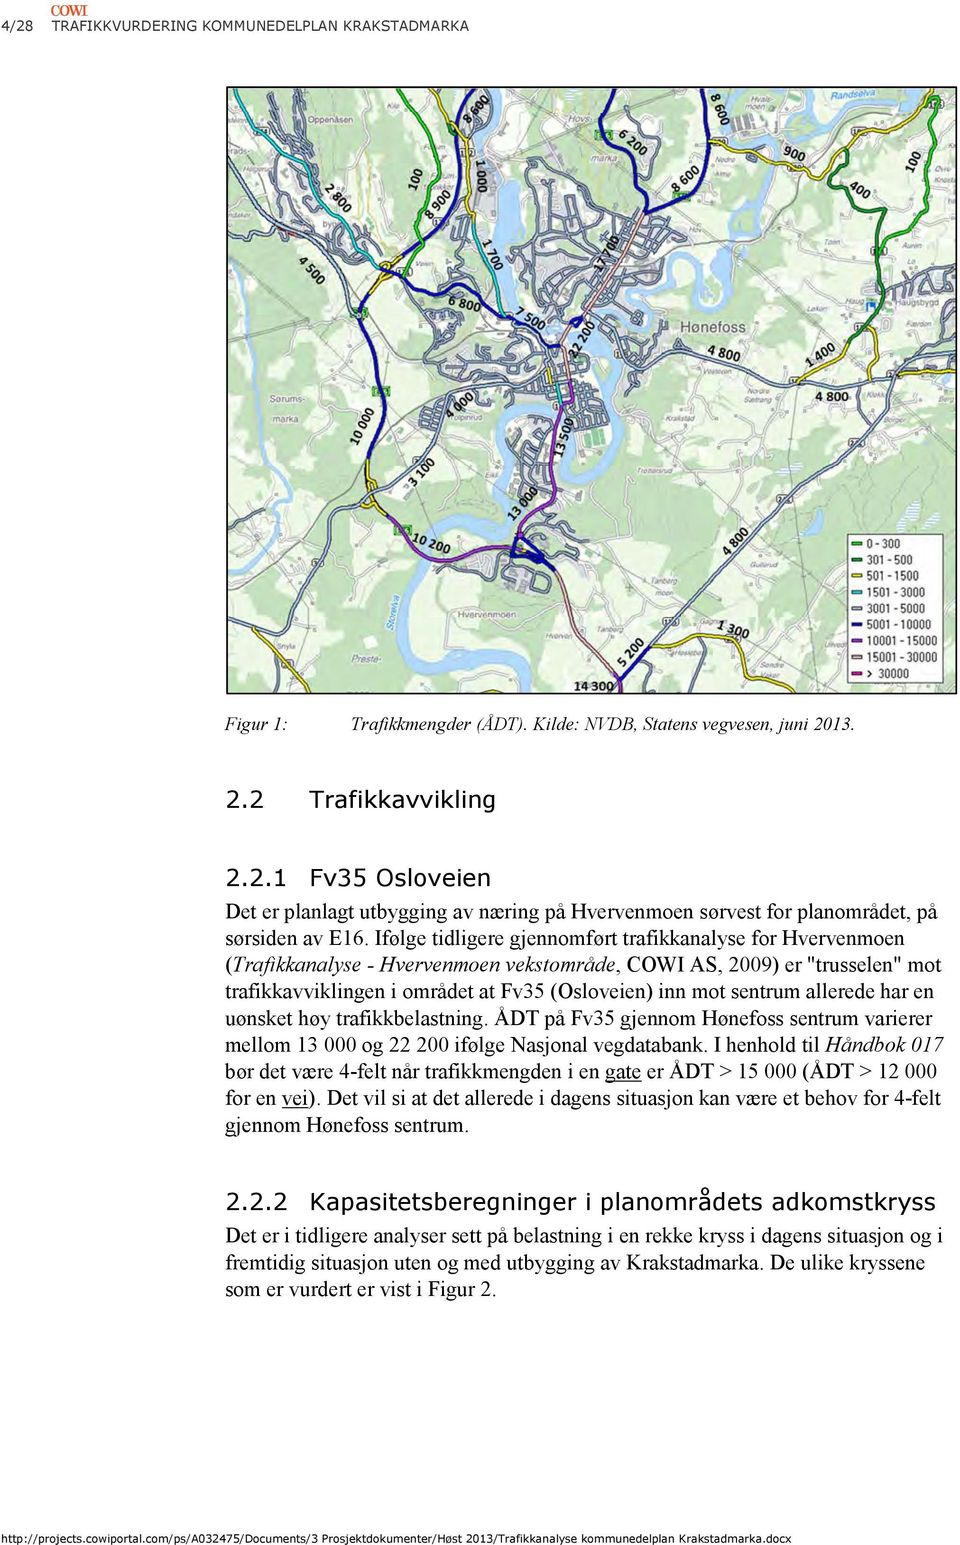 sentrum allerede har en uønsket høy trafikkbelastning. ÅDT på Fv35 gjennom Hønefoss sentrum varierer mellom 13 000 og 22 200 ifølge Nasjonal vegdatabank.